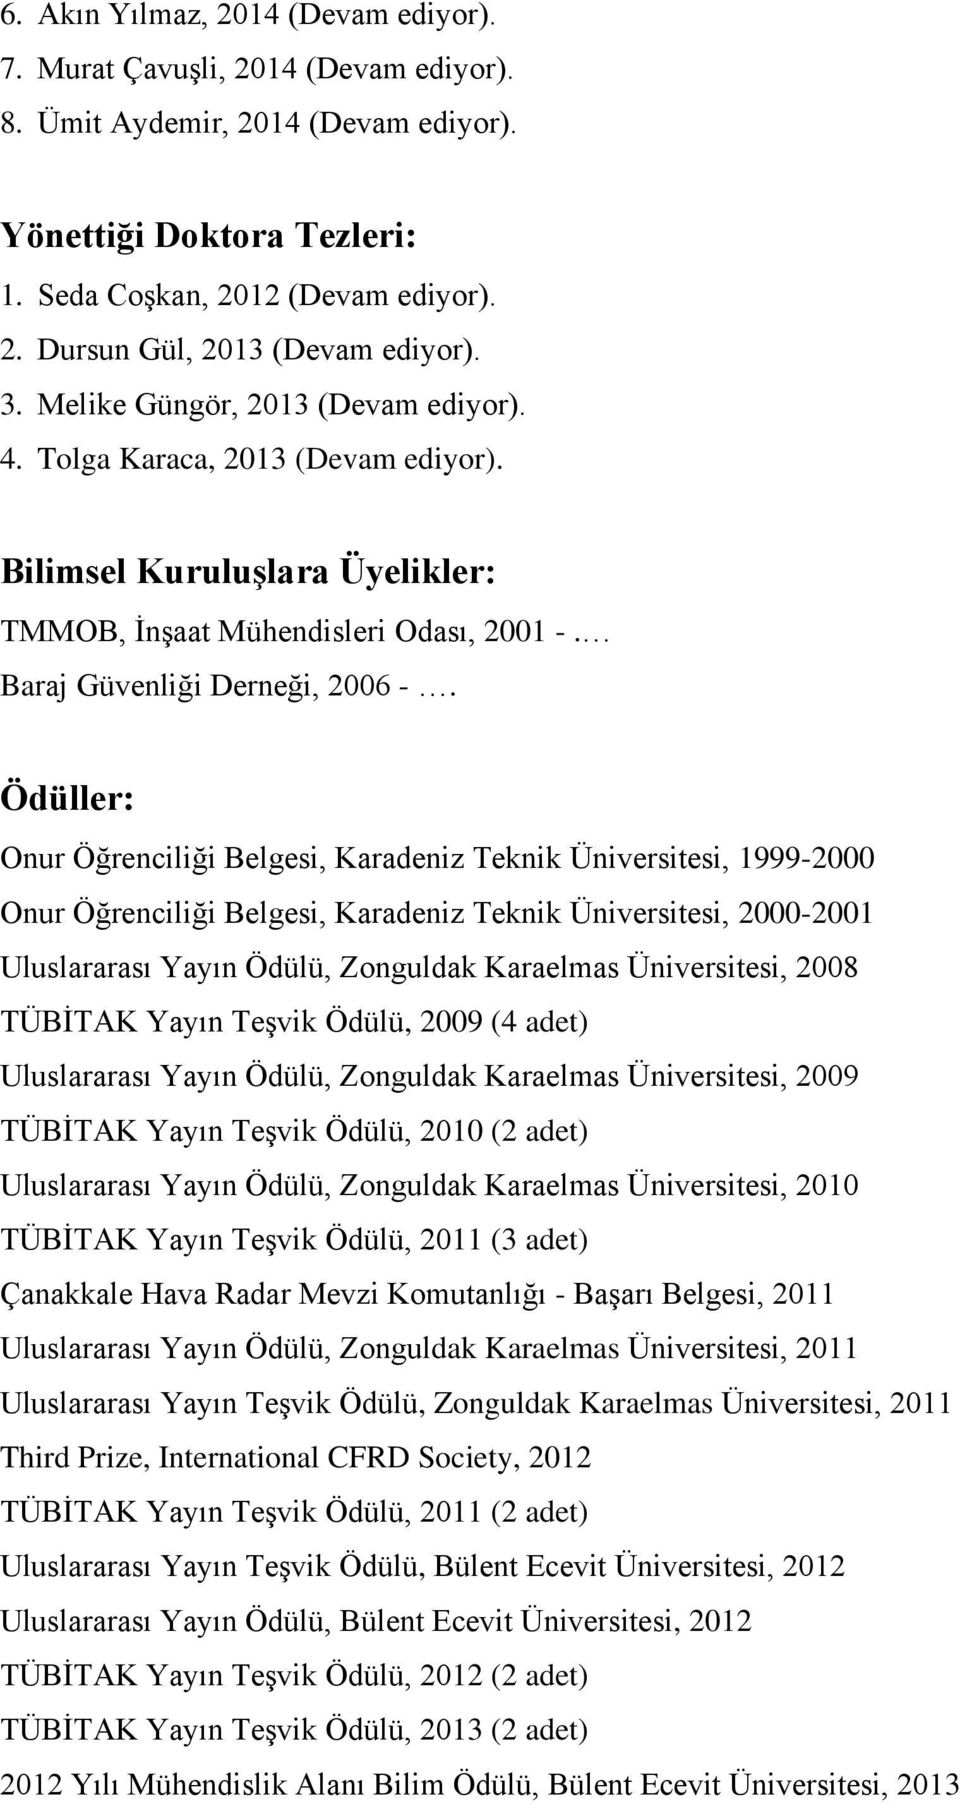 Ödüller: Onur Öğrenciliği Belgesi, Karadeniz Teknik Üniversitesi, 1999-2000 Onur Öğrenciliği Belgesi, Karadeniz Teknik Üniversitesi, 2000-2001 Uluslararası Yayın Ödülü, Zonguldak Karaelmas